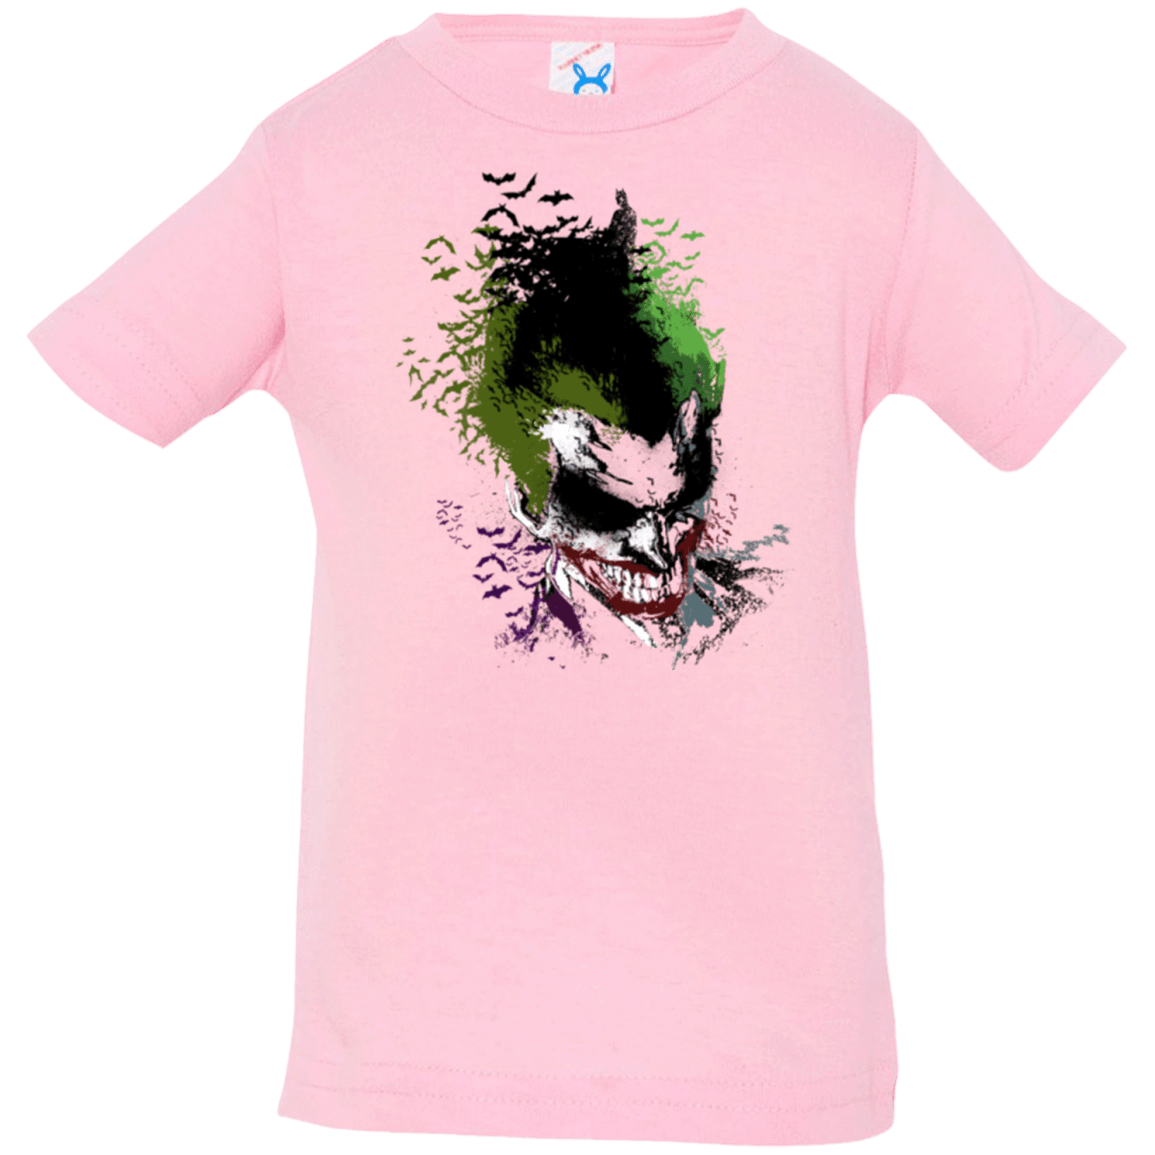 T-Shirts Pink / 6 Months Joker 2 Infant Premium T-Shirt